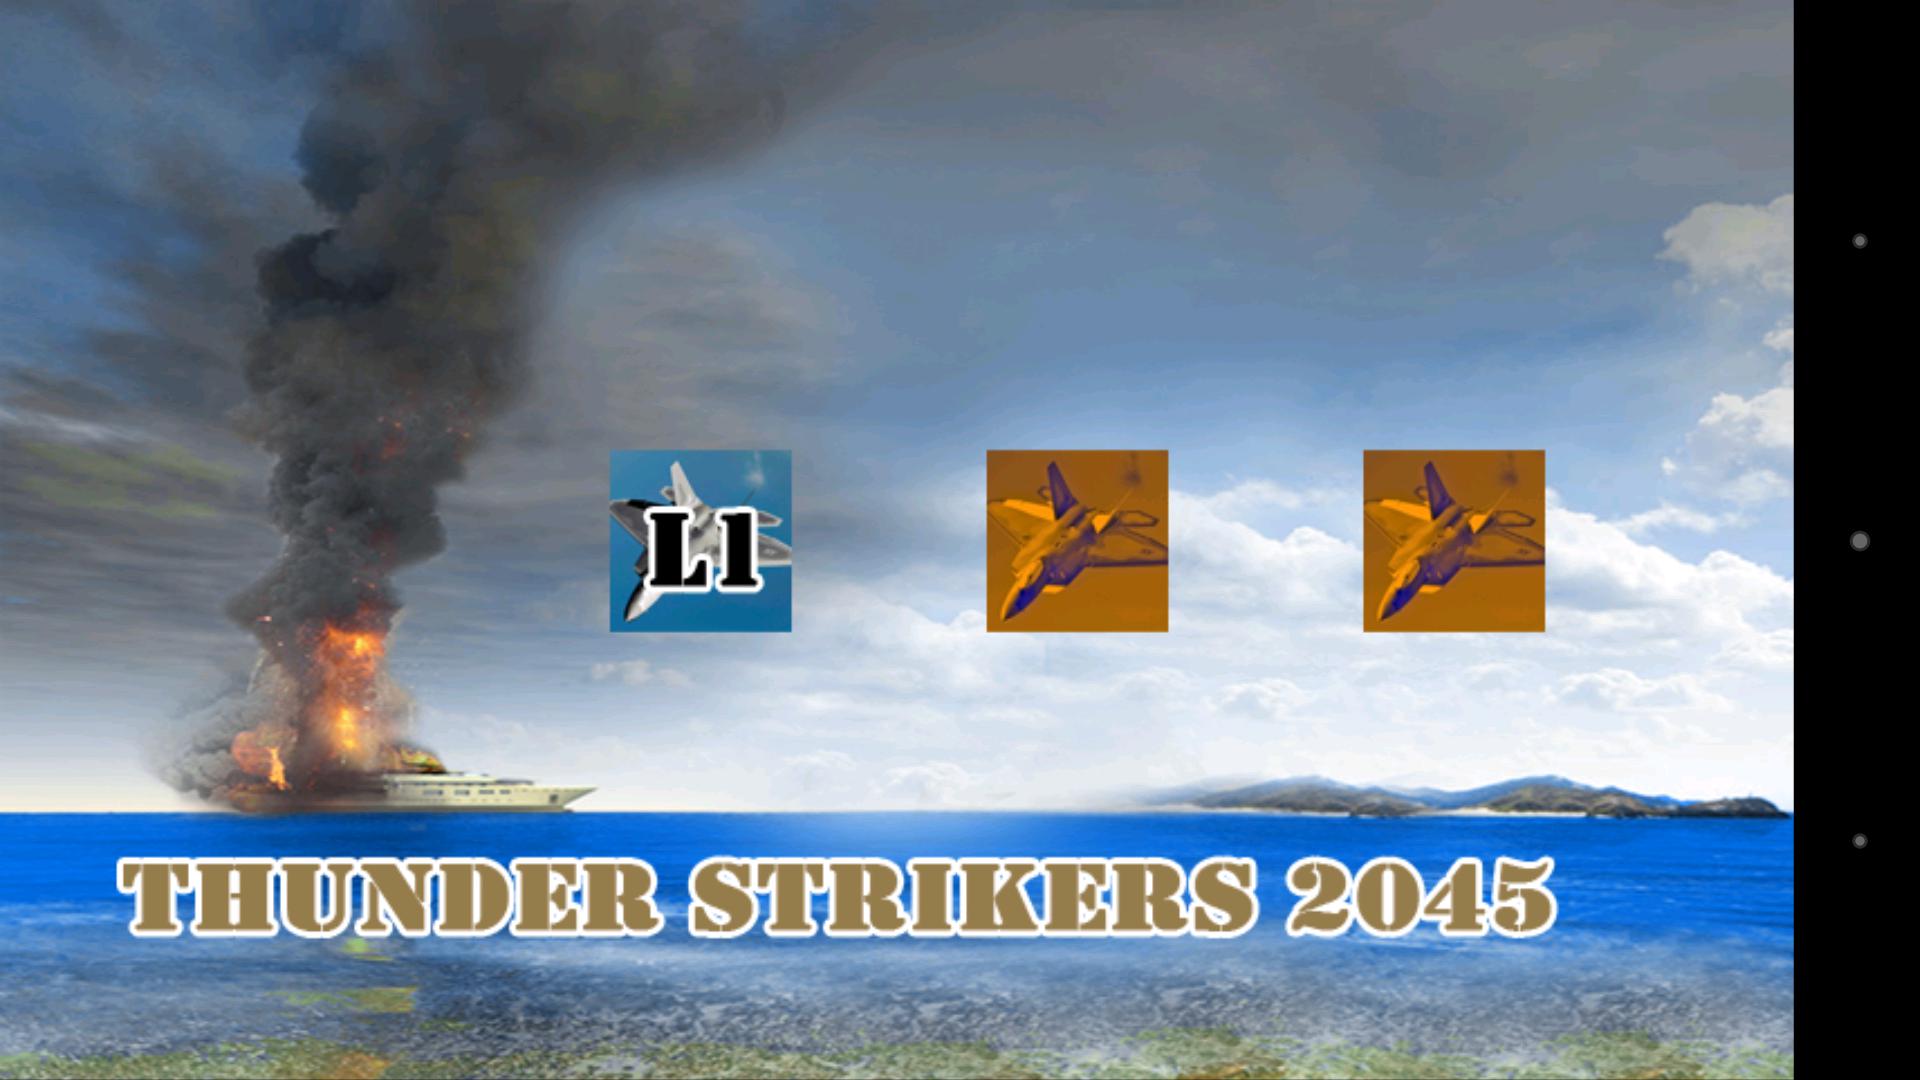 Thunder Strikers 2045